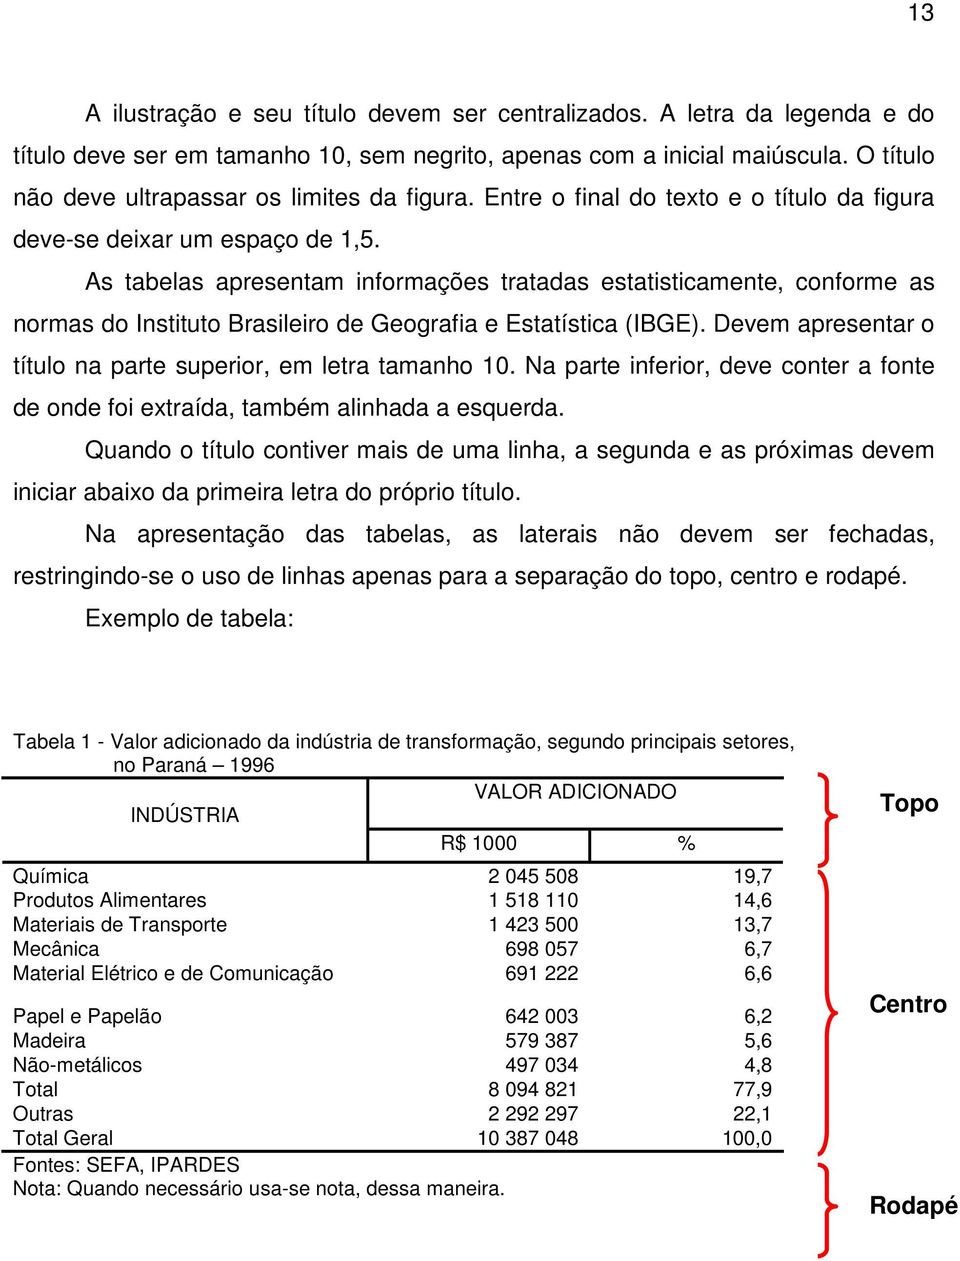 As tabelas apresentam informações tratadas estatisticamente, conforme as normas do Instituto Brasileiro de Geografia e Estatística (IBGE).